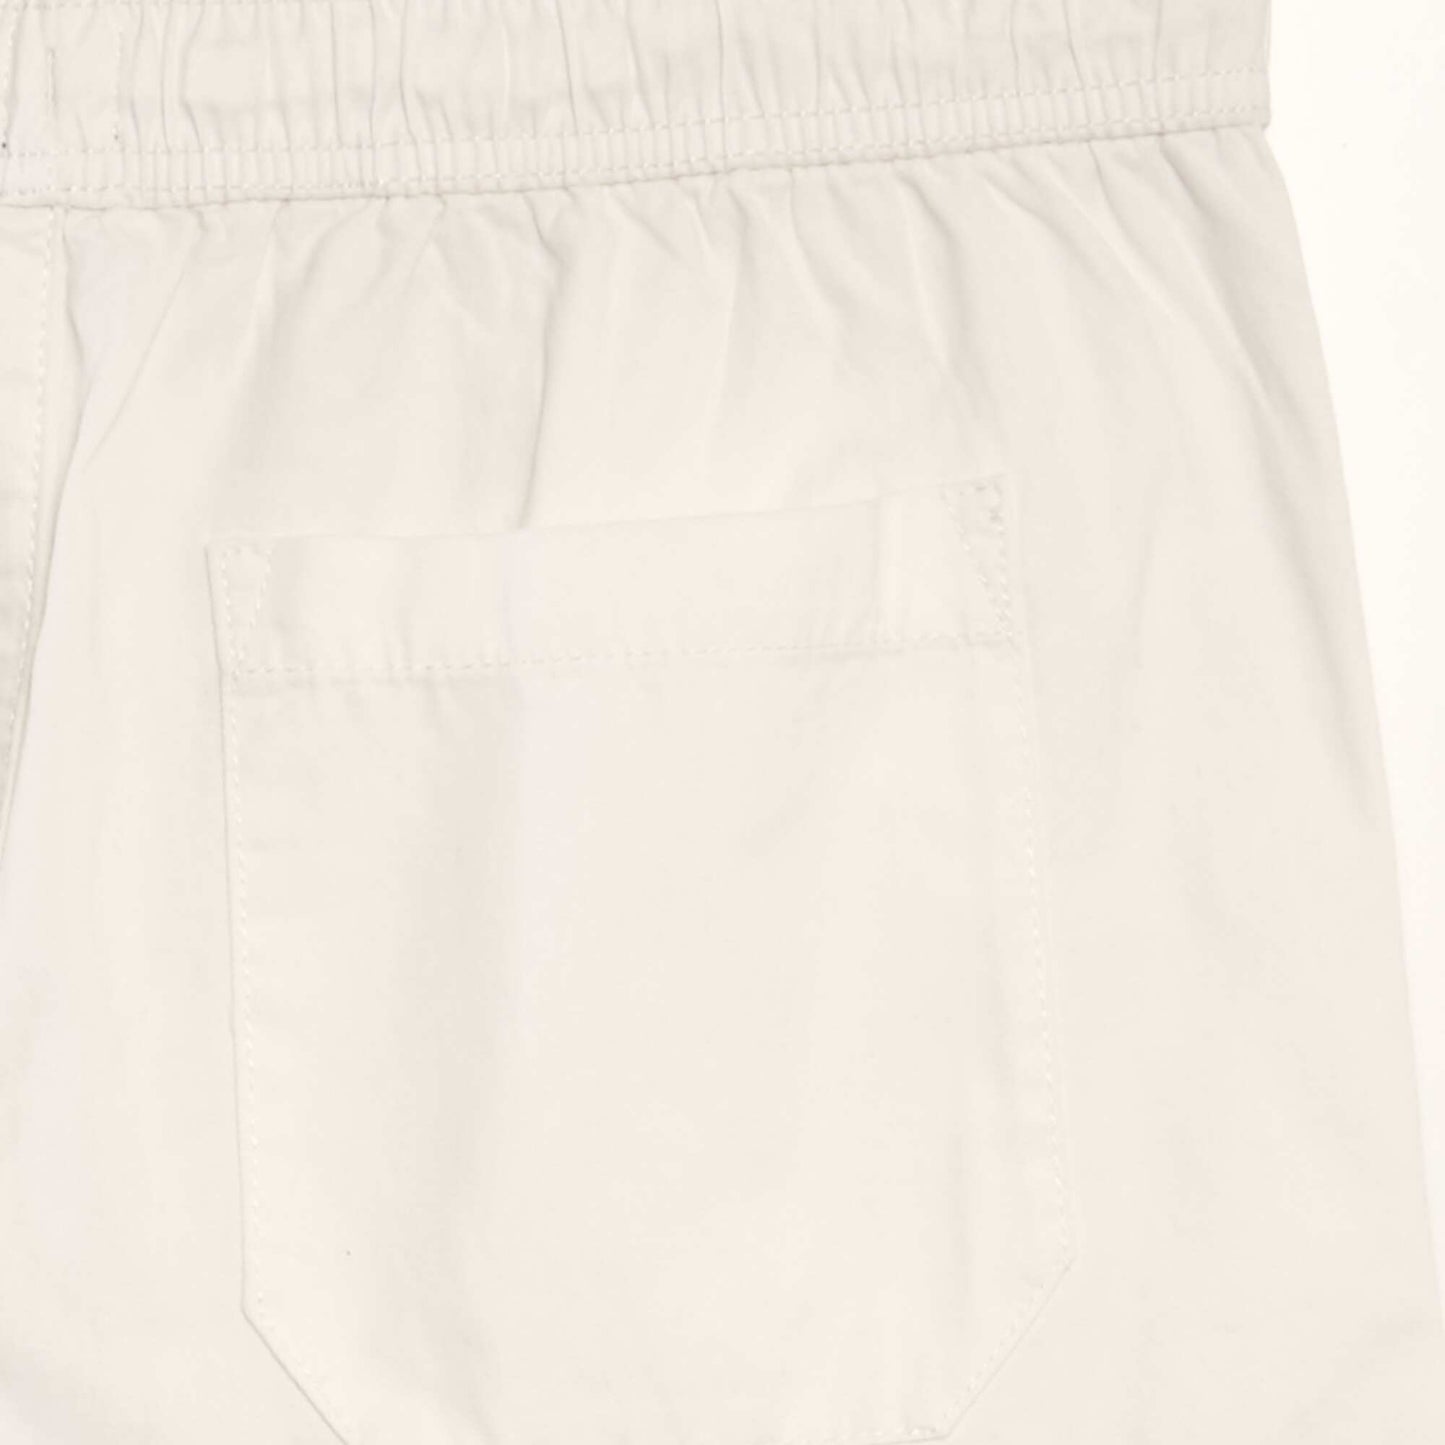 Chino Bermuda shorts with elasticated waist WHITE